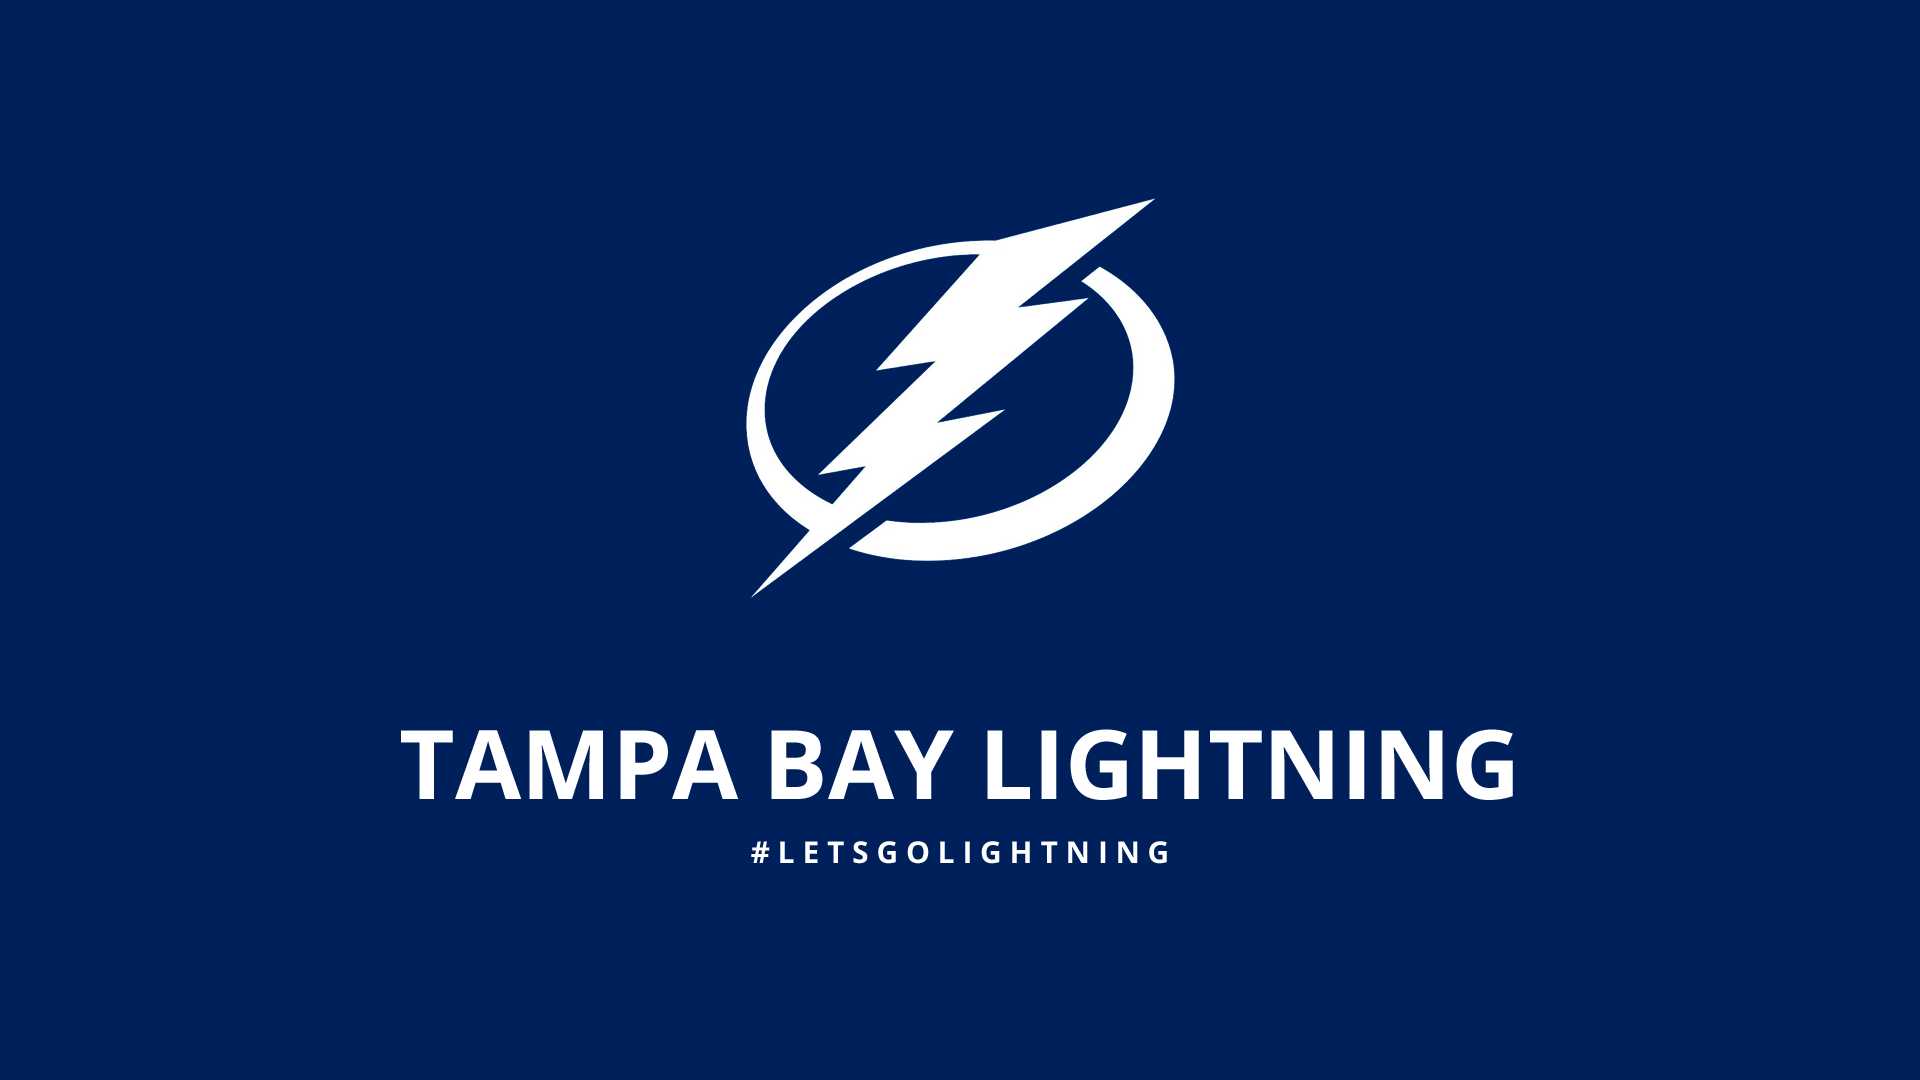 HD Tampa Bay Lightning Wallpaper 1